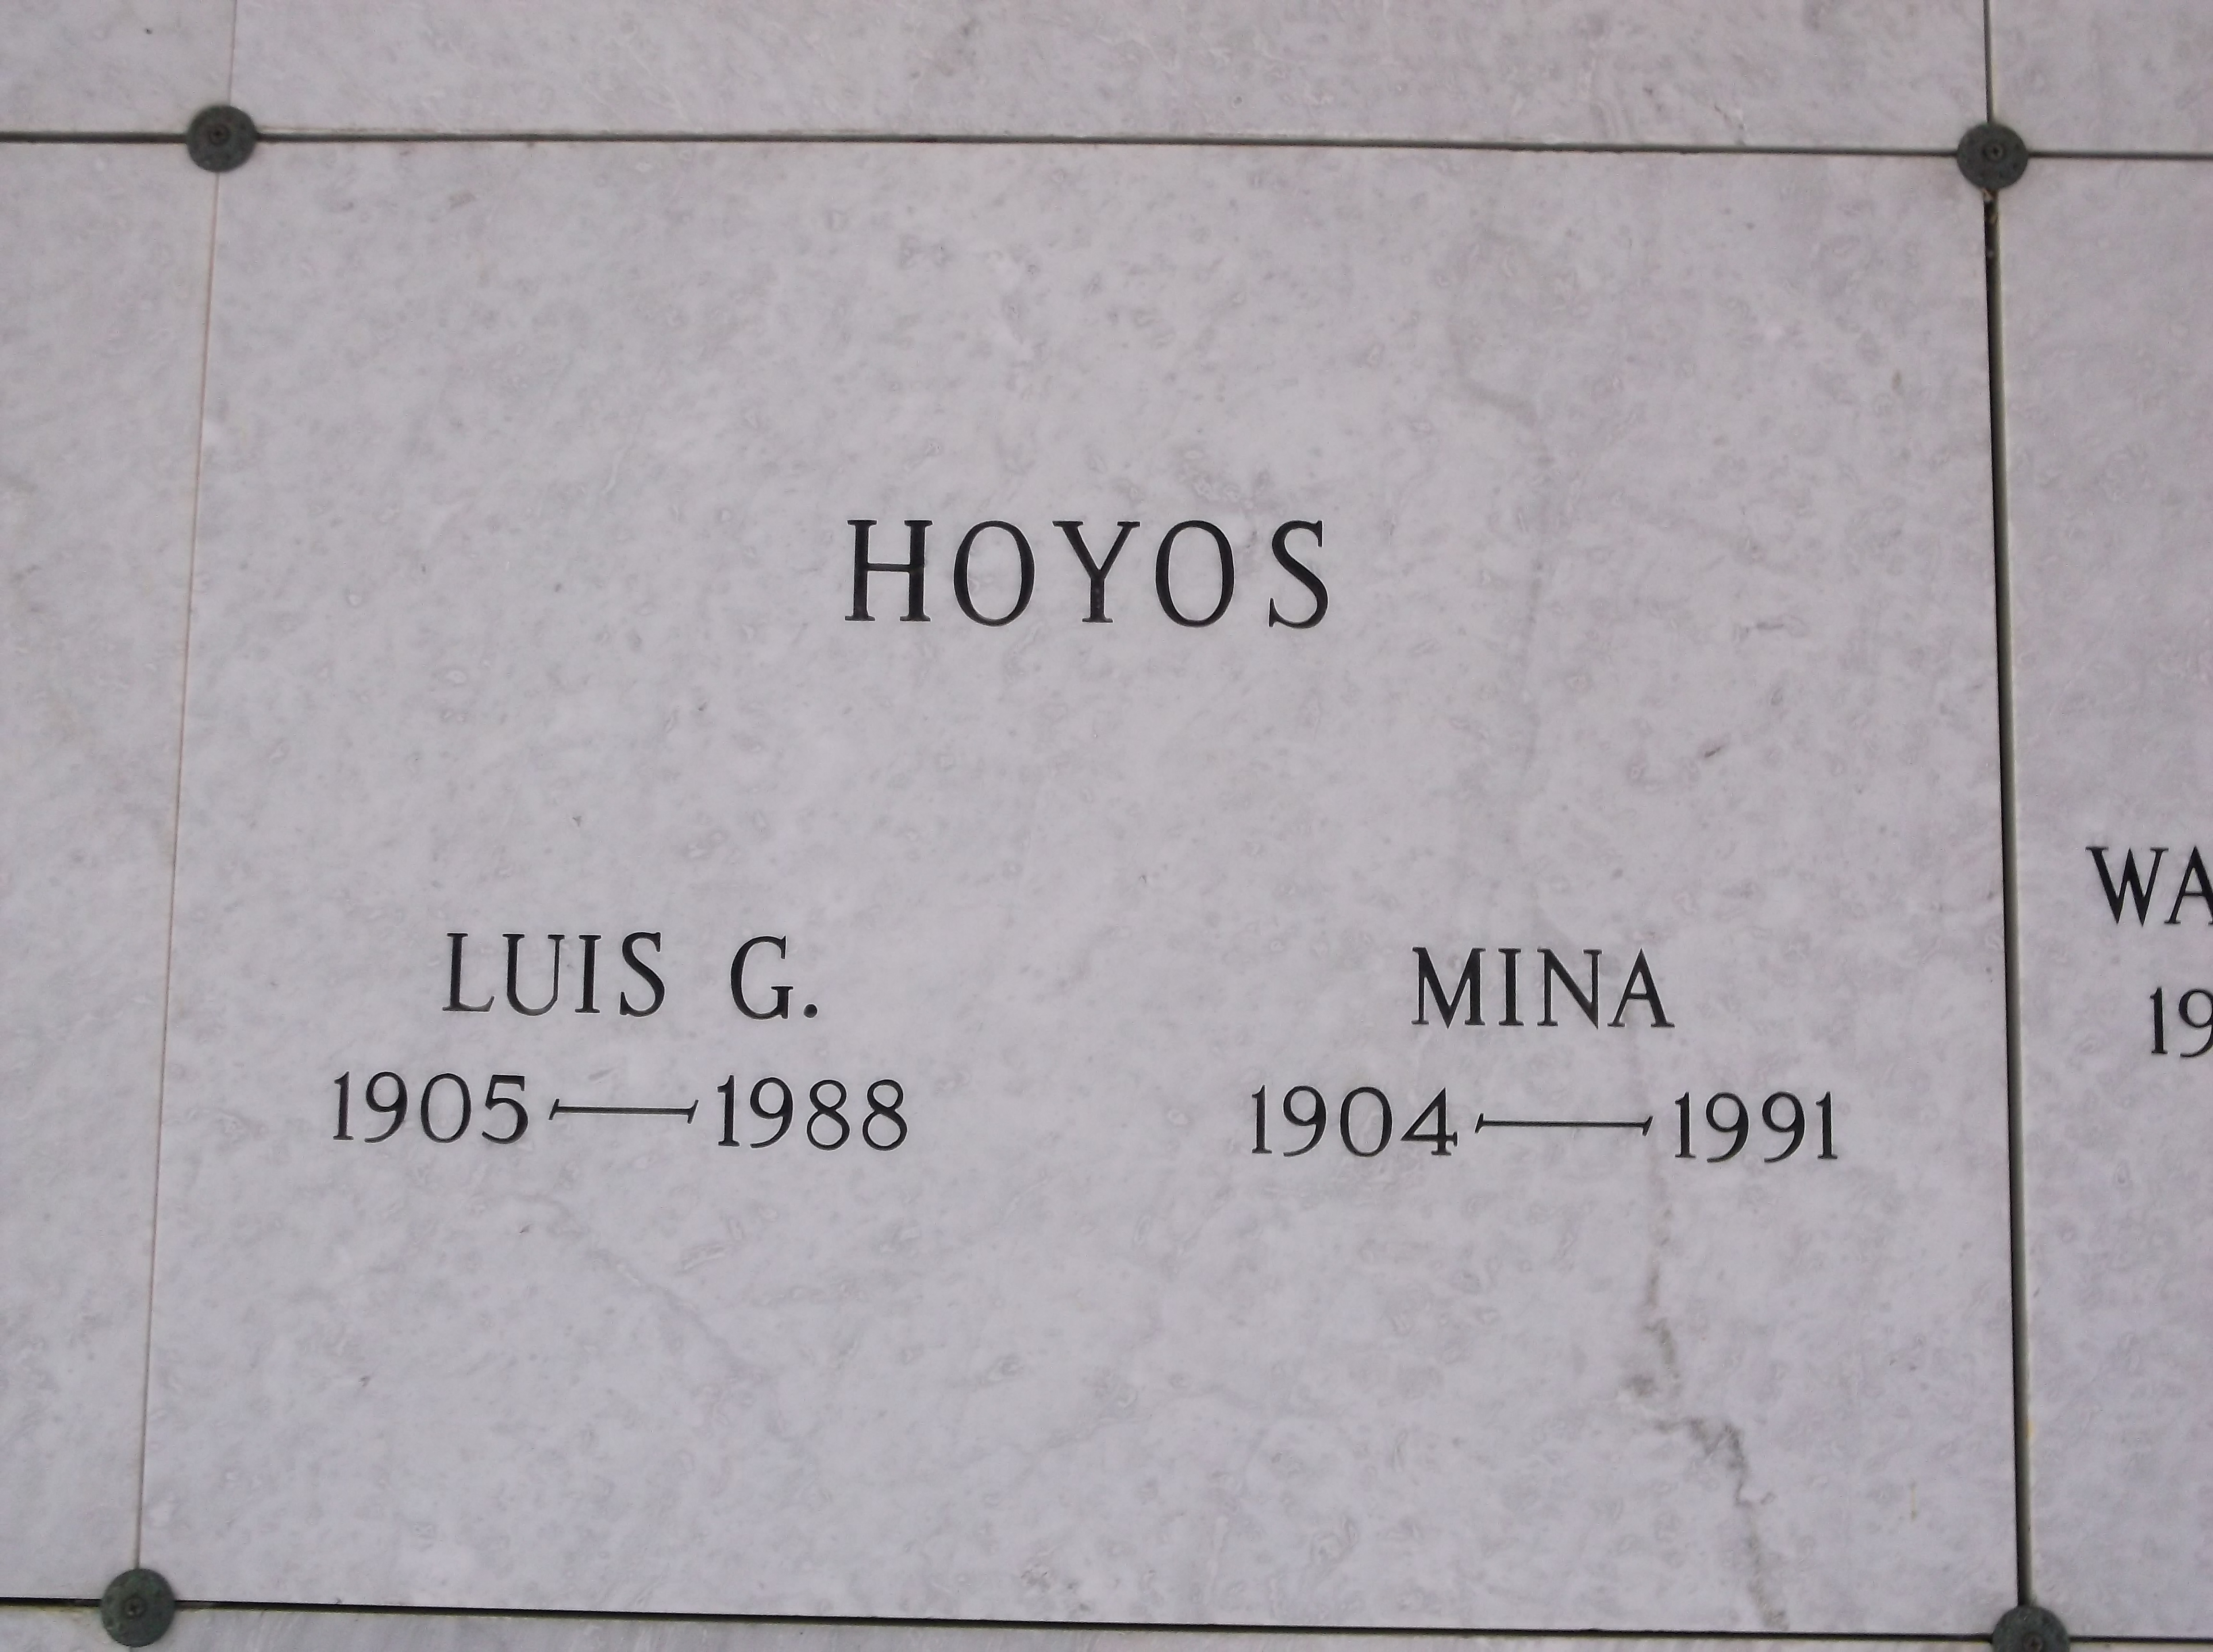 Mina Hoyos